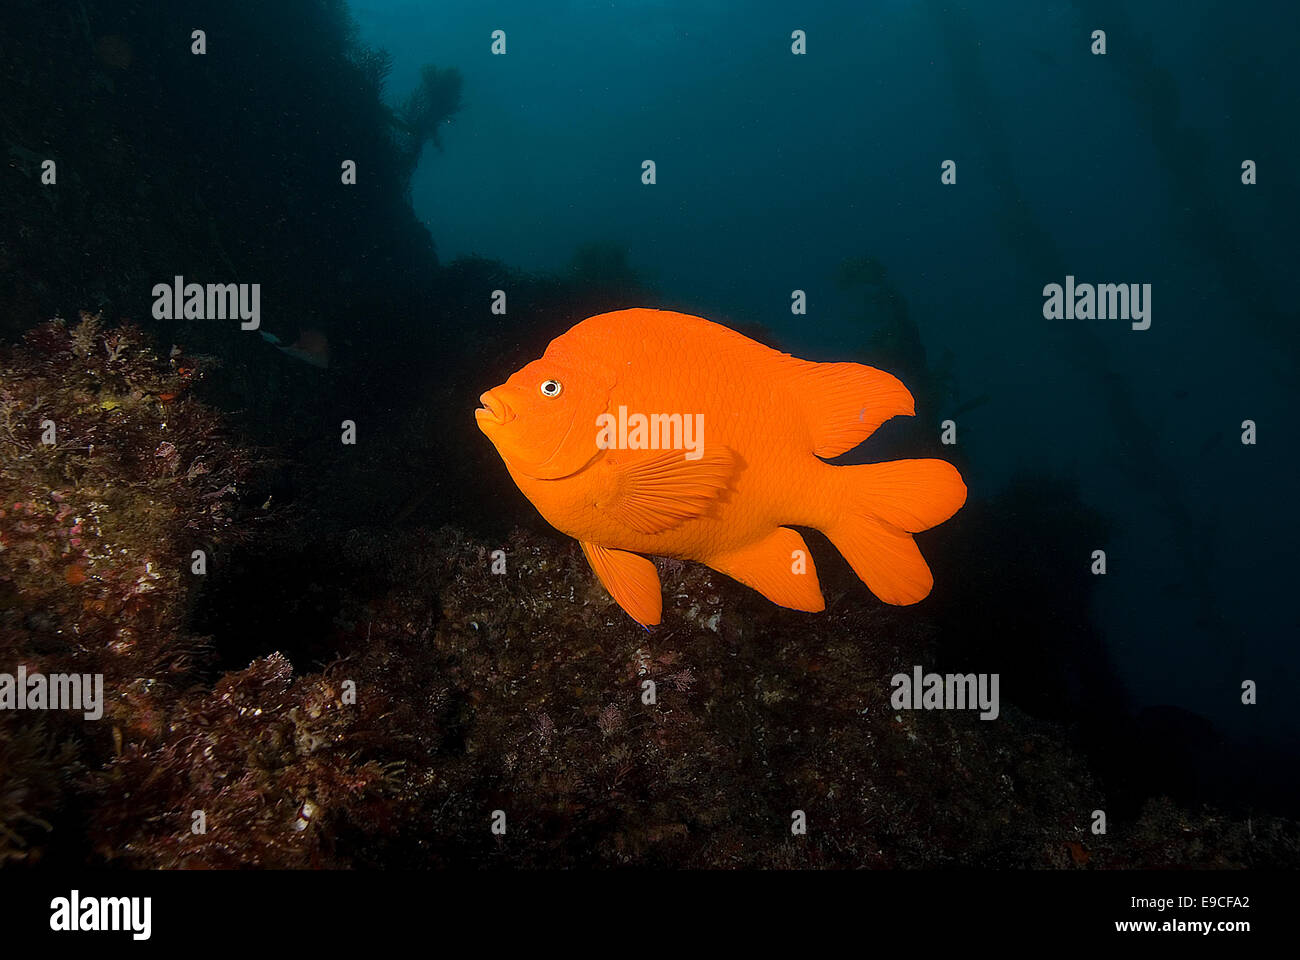 Underwater Garibaldi fish at California reef Stock Photo